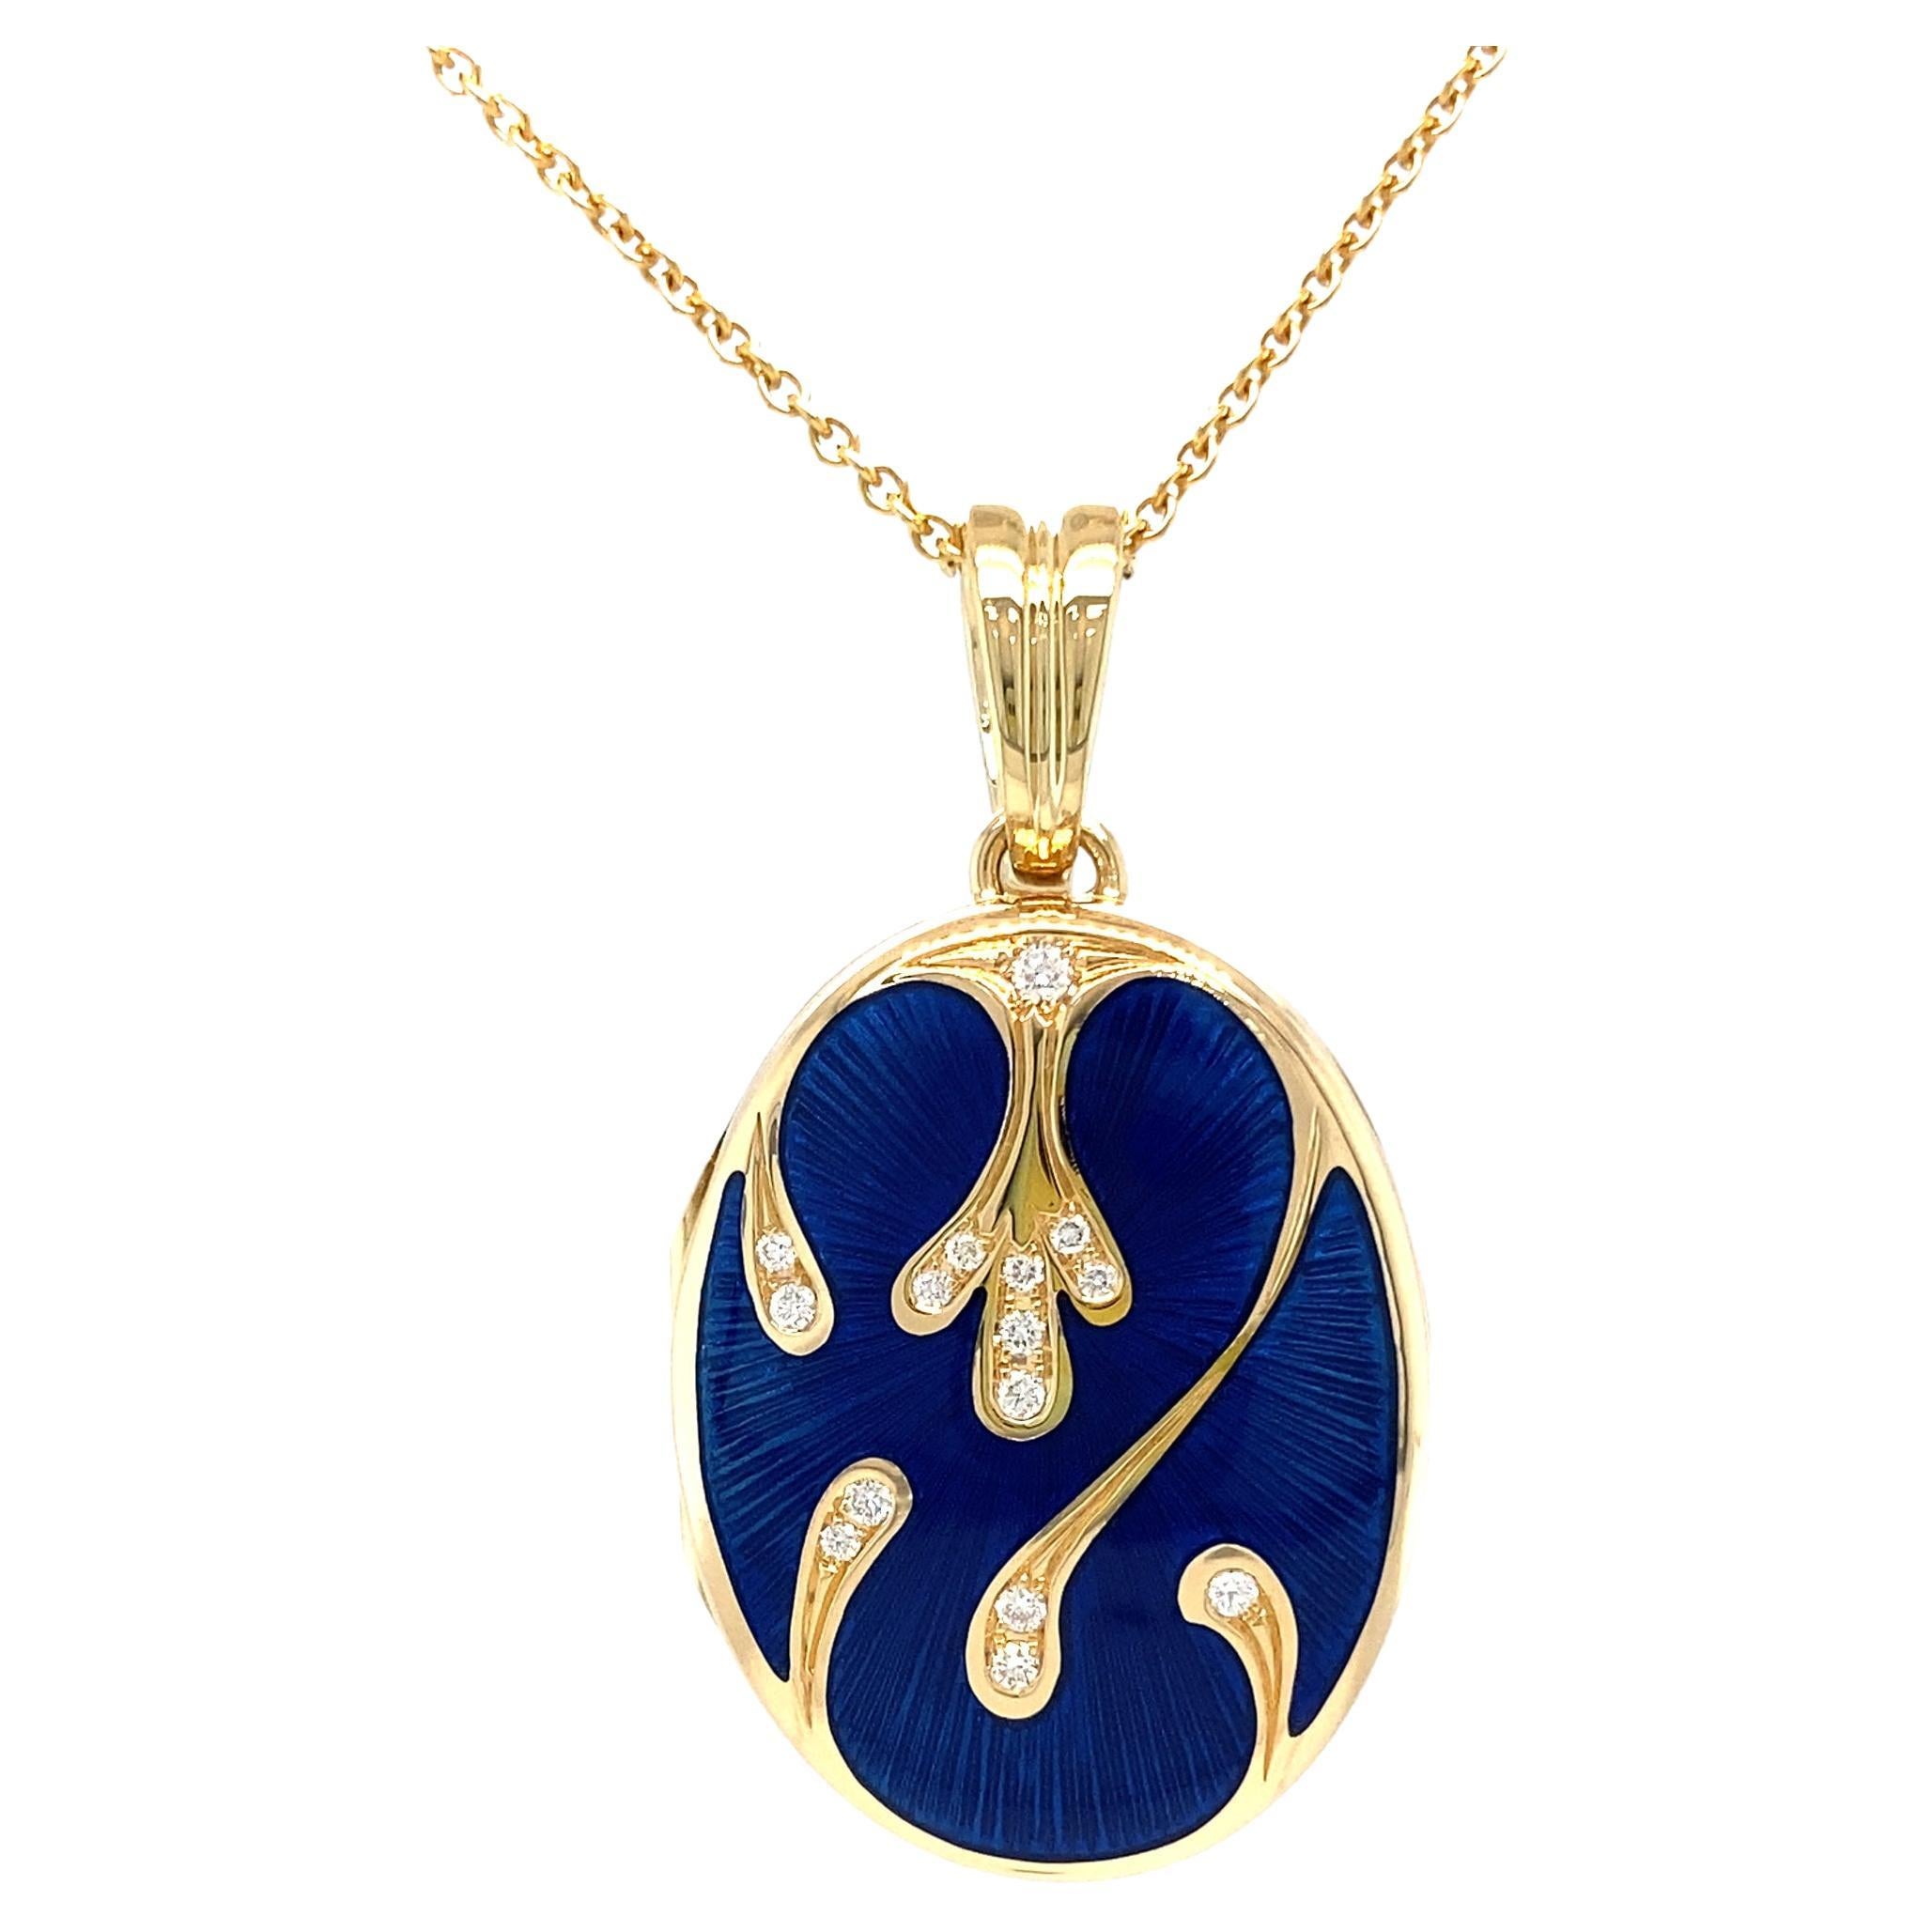 Collier pendentif médaillon ovale en or jaune 18 carats et émail bleu avec 15 diamants 0,16 carat